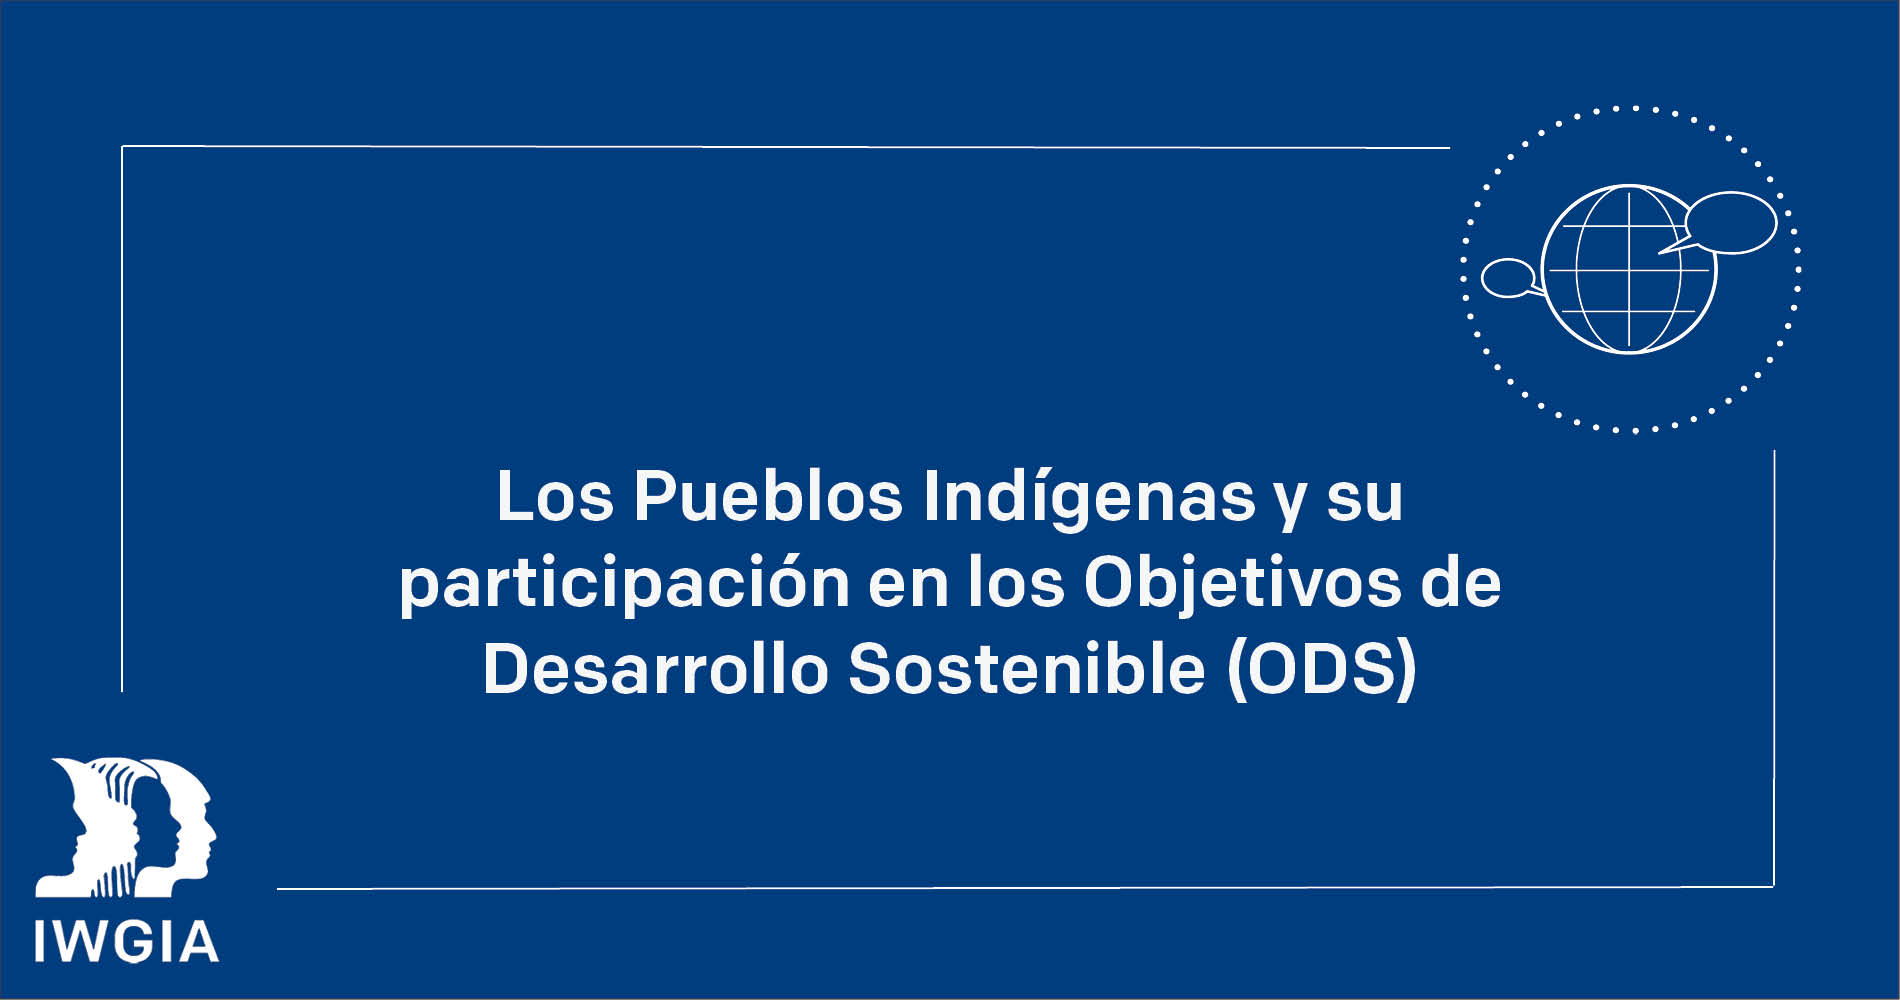 Los pueblos indígenas y su participación en los Objetivos de Desarrollo Sostenible (ODS)